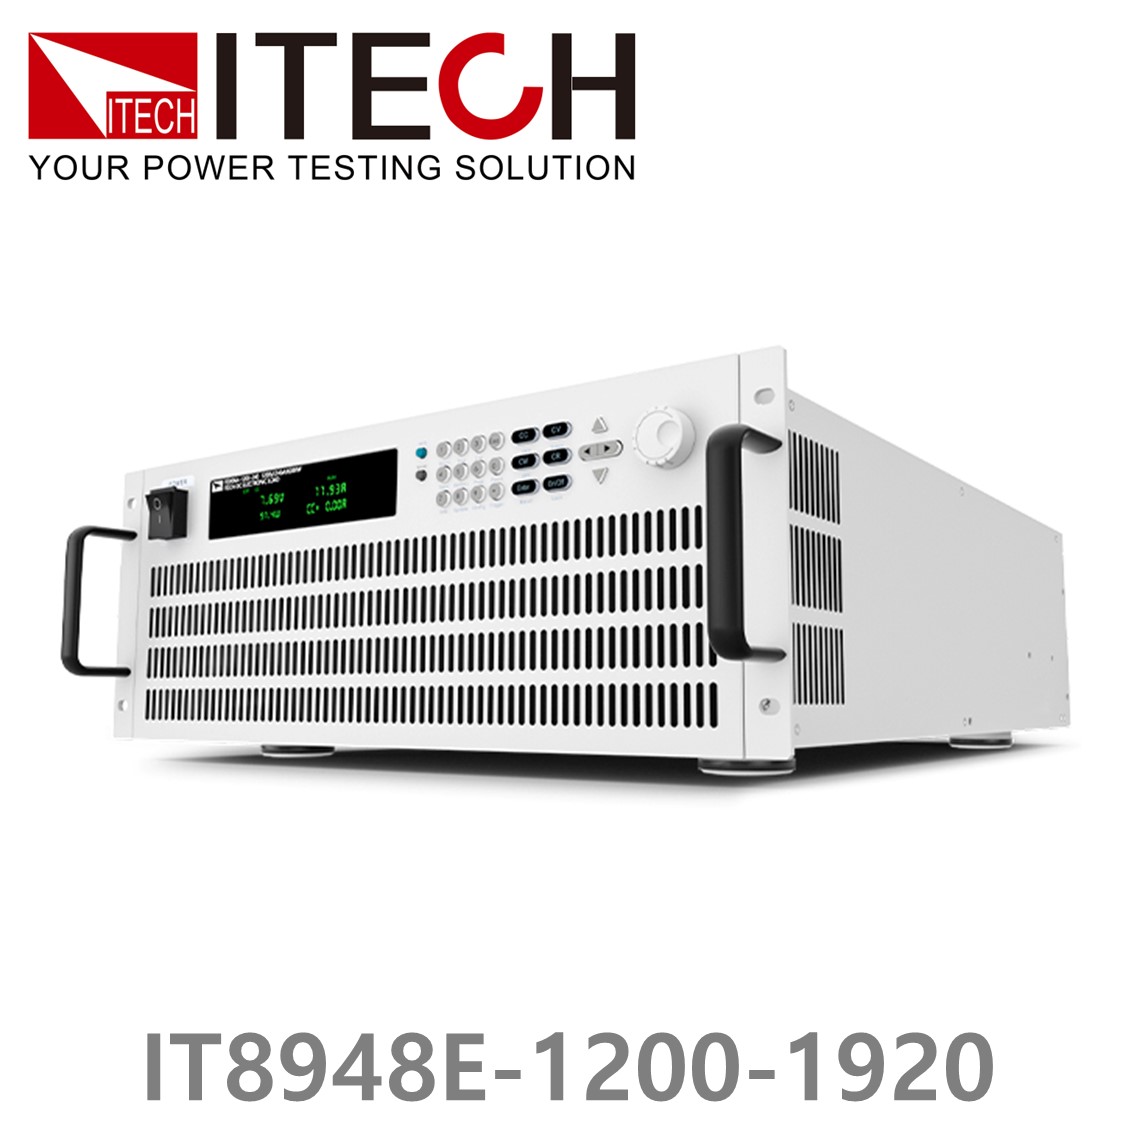 [ ITECH ] IT8948E-1200-1920  고성능 고전력 DC 전자로드 1200V/1920A/48kW (37U)